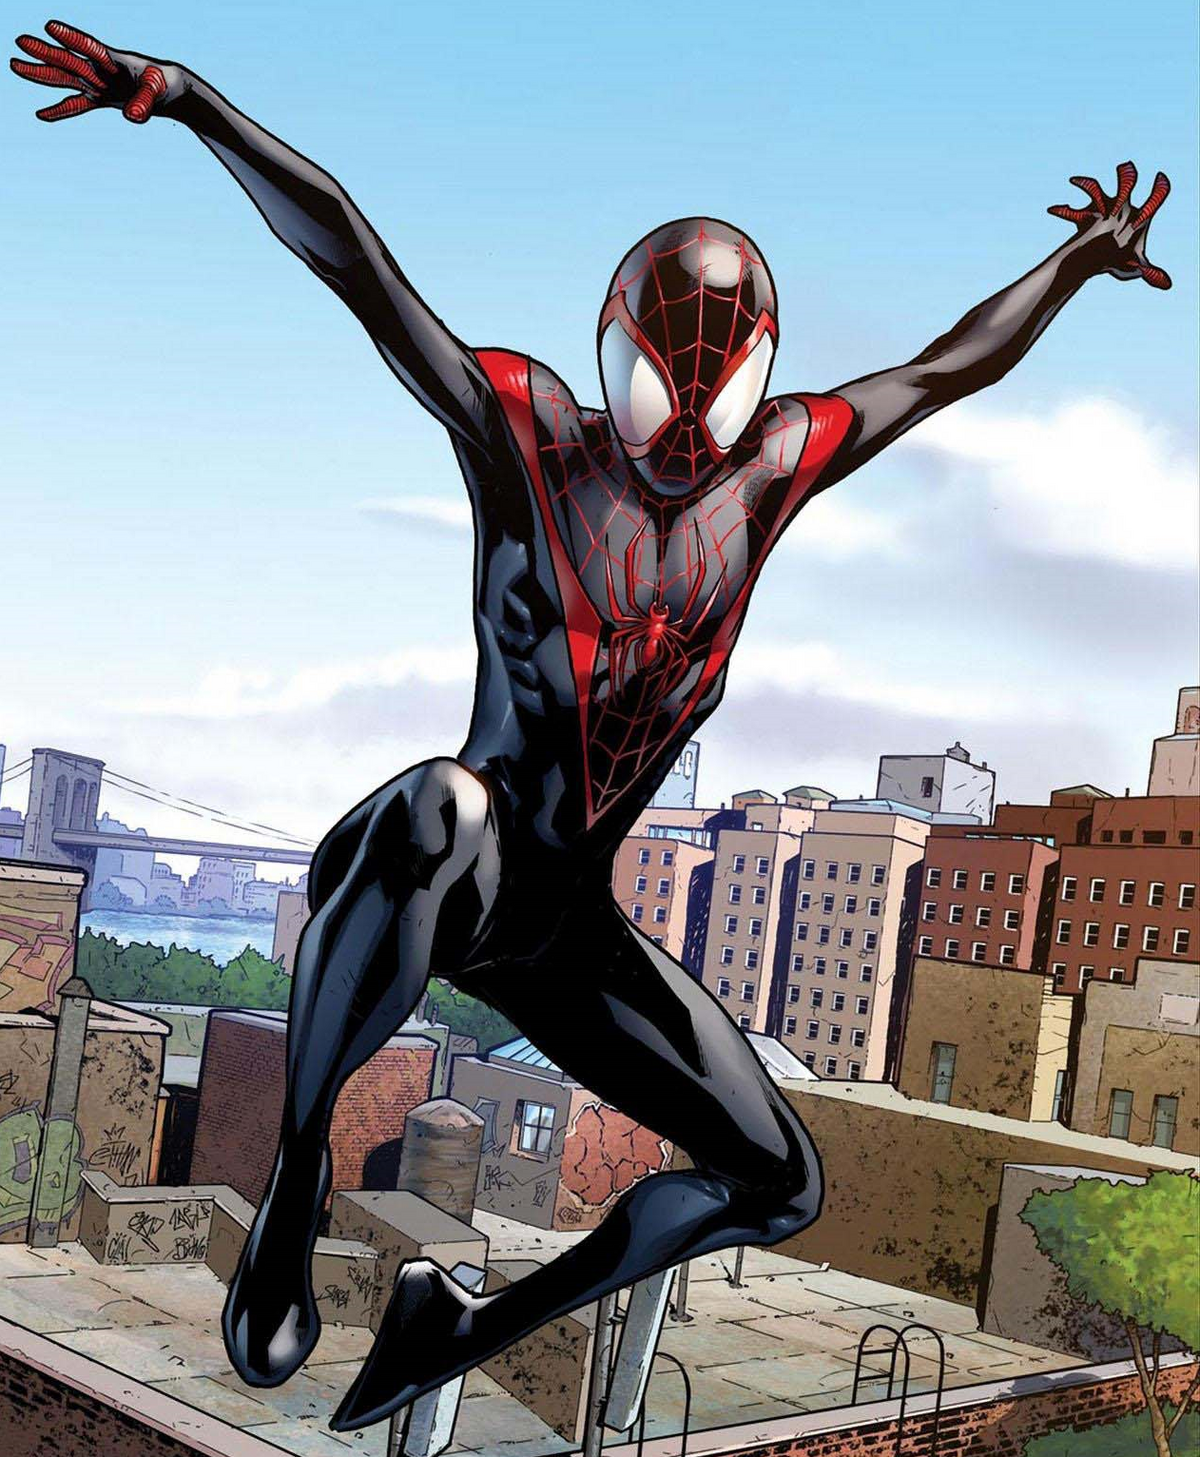 Análisis de Marvel's Spider-Man: Miles Morales - La voz de una